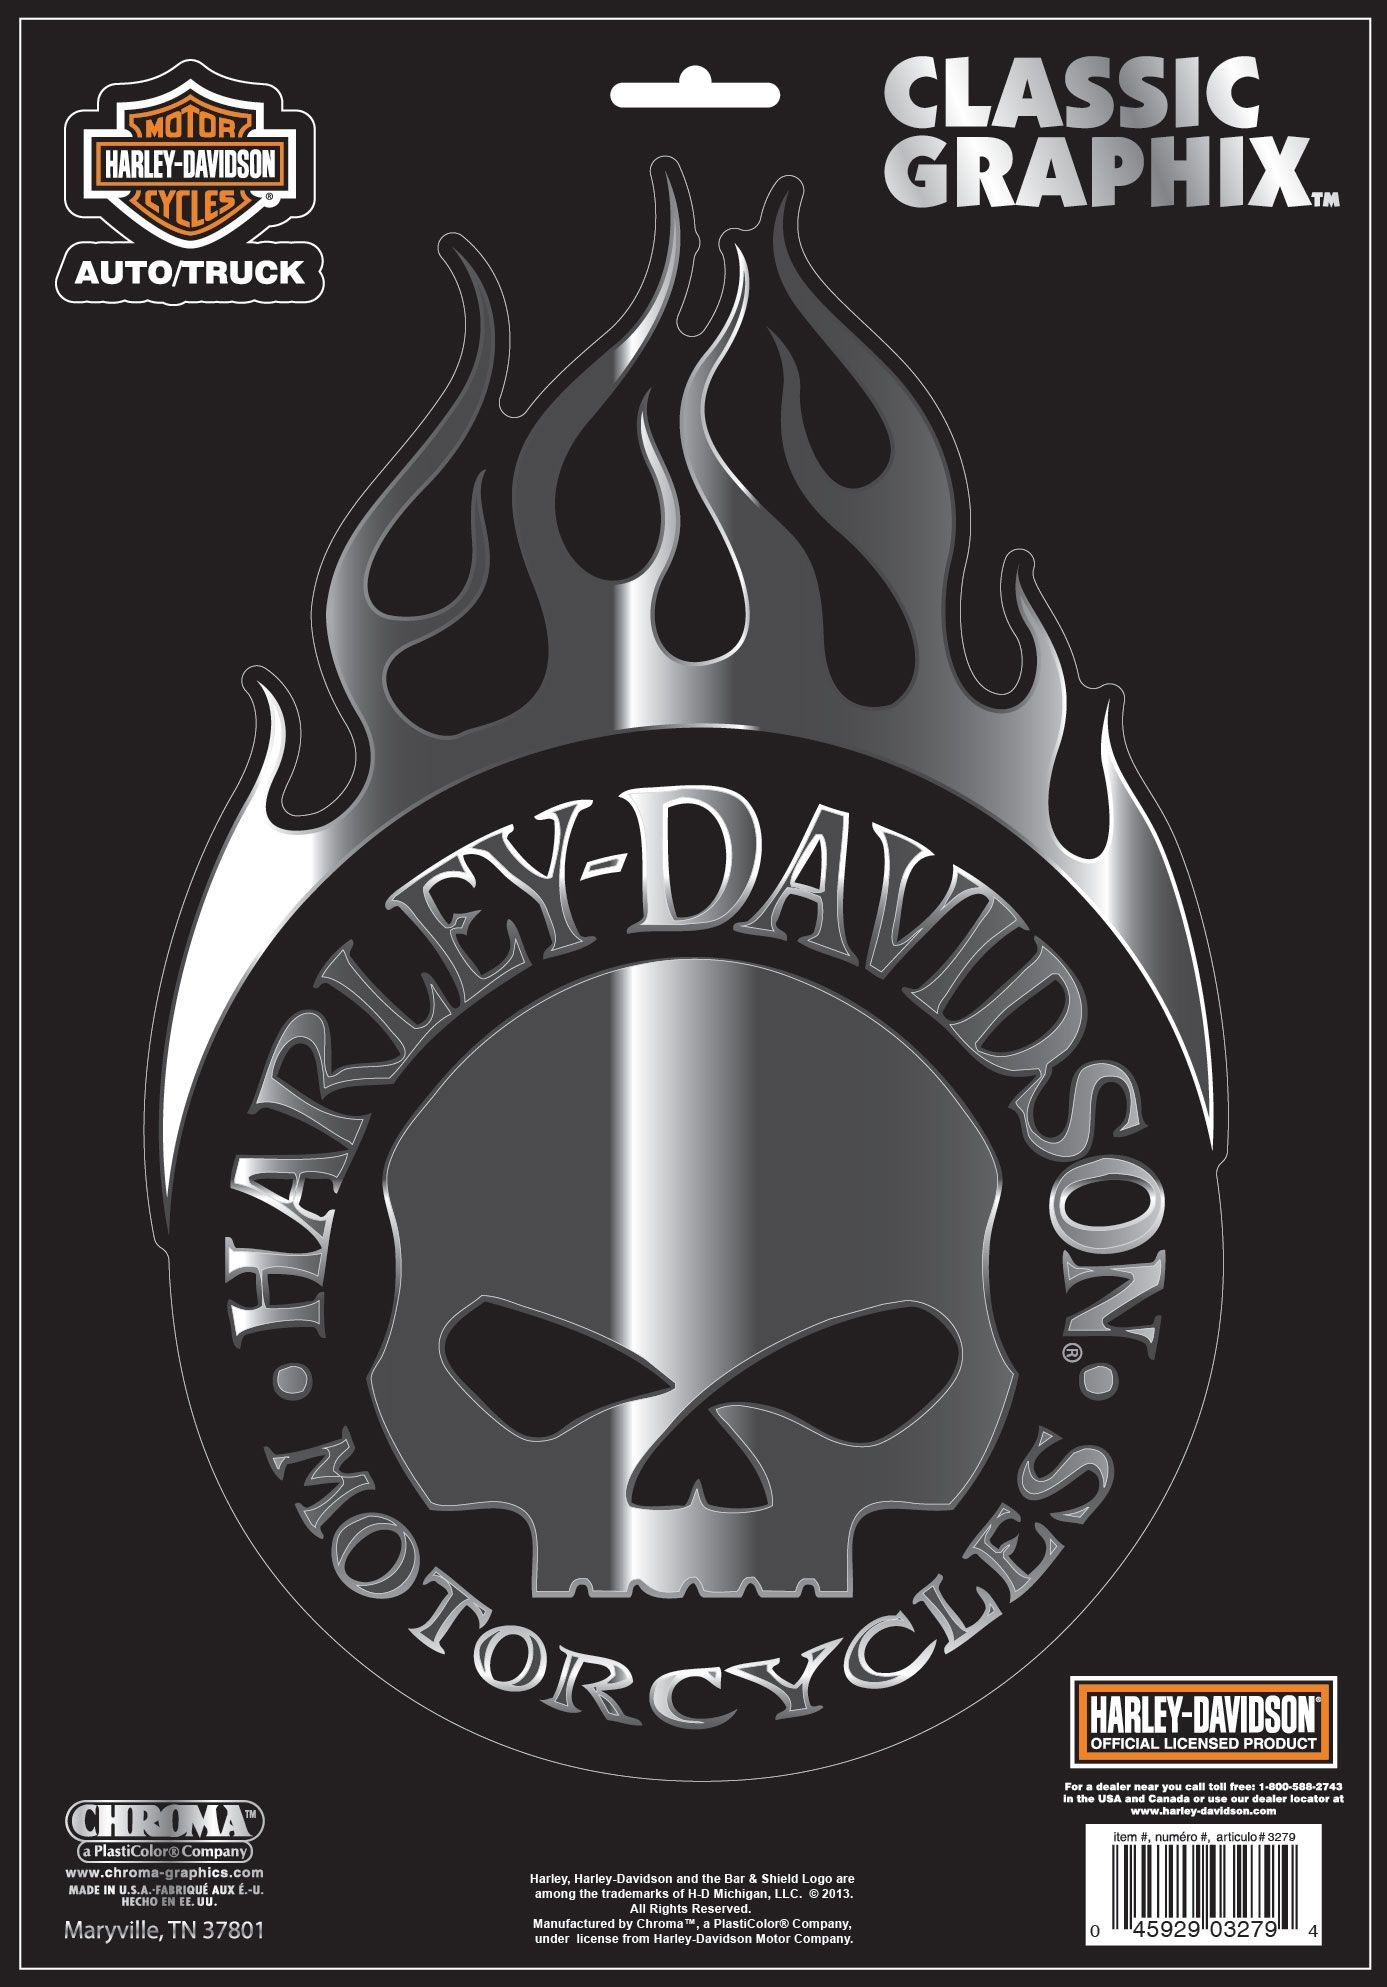 Wallpaper Harley Davidson Skull Logo Wallpapers